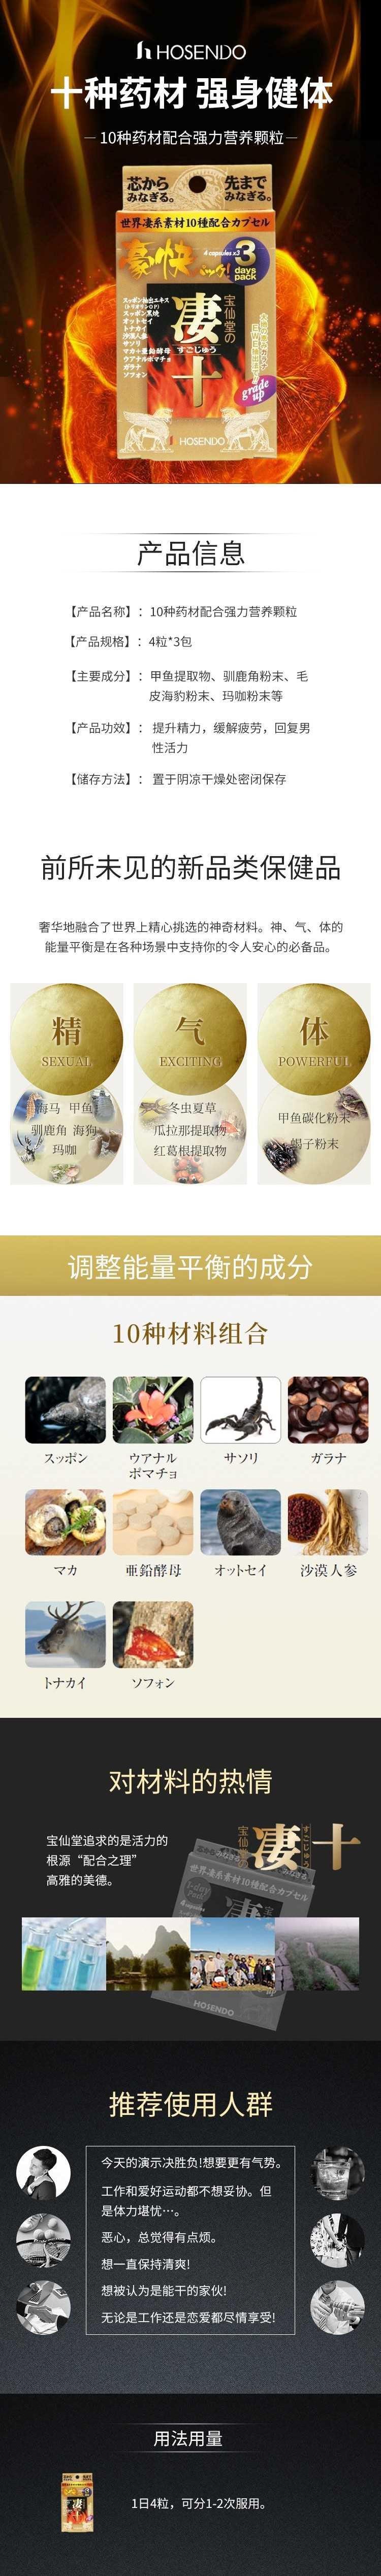 【日本直郵】Hoshisan 寶仙堂淒十 世界各國動植物系10種藥材配合強力顆粒 3日量4顆*3包